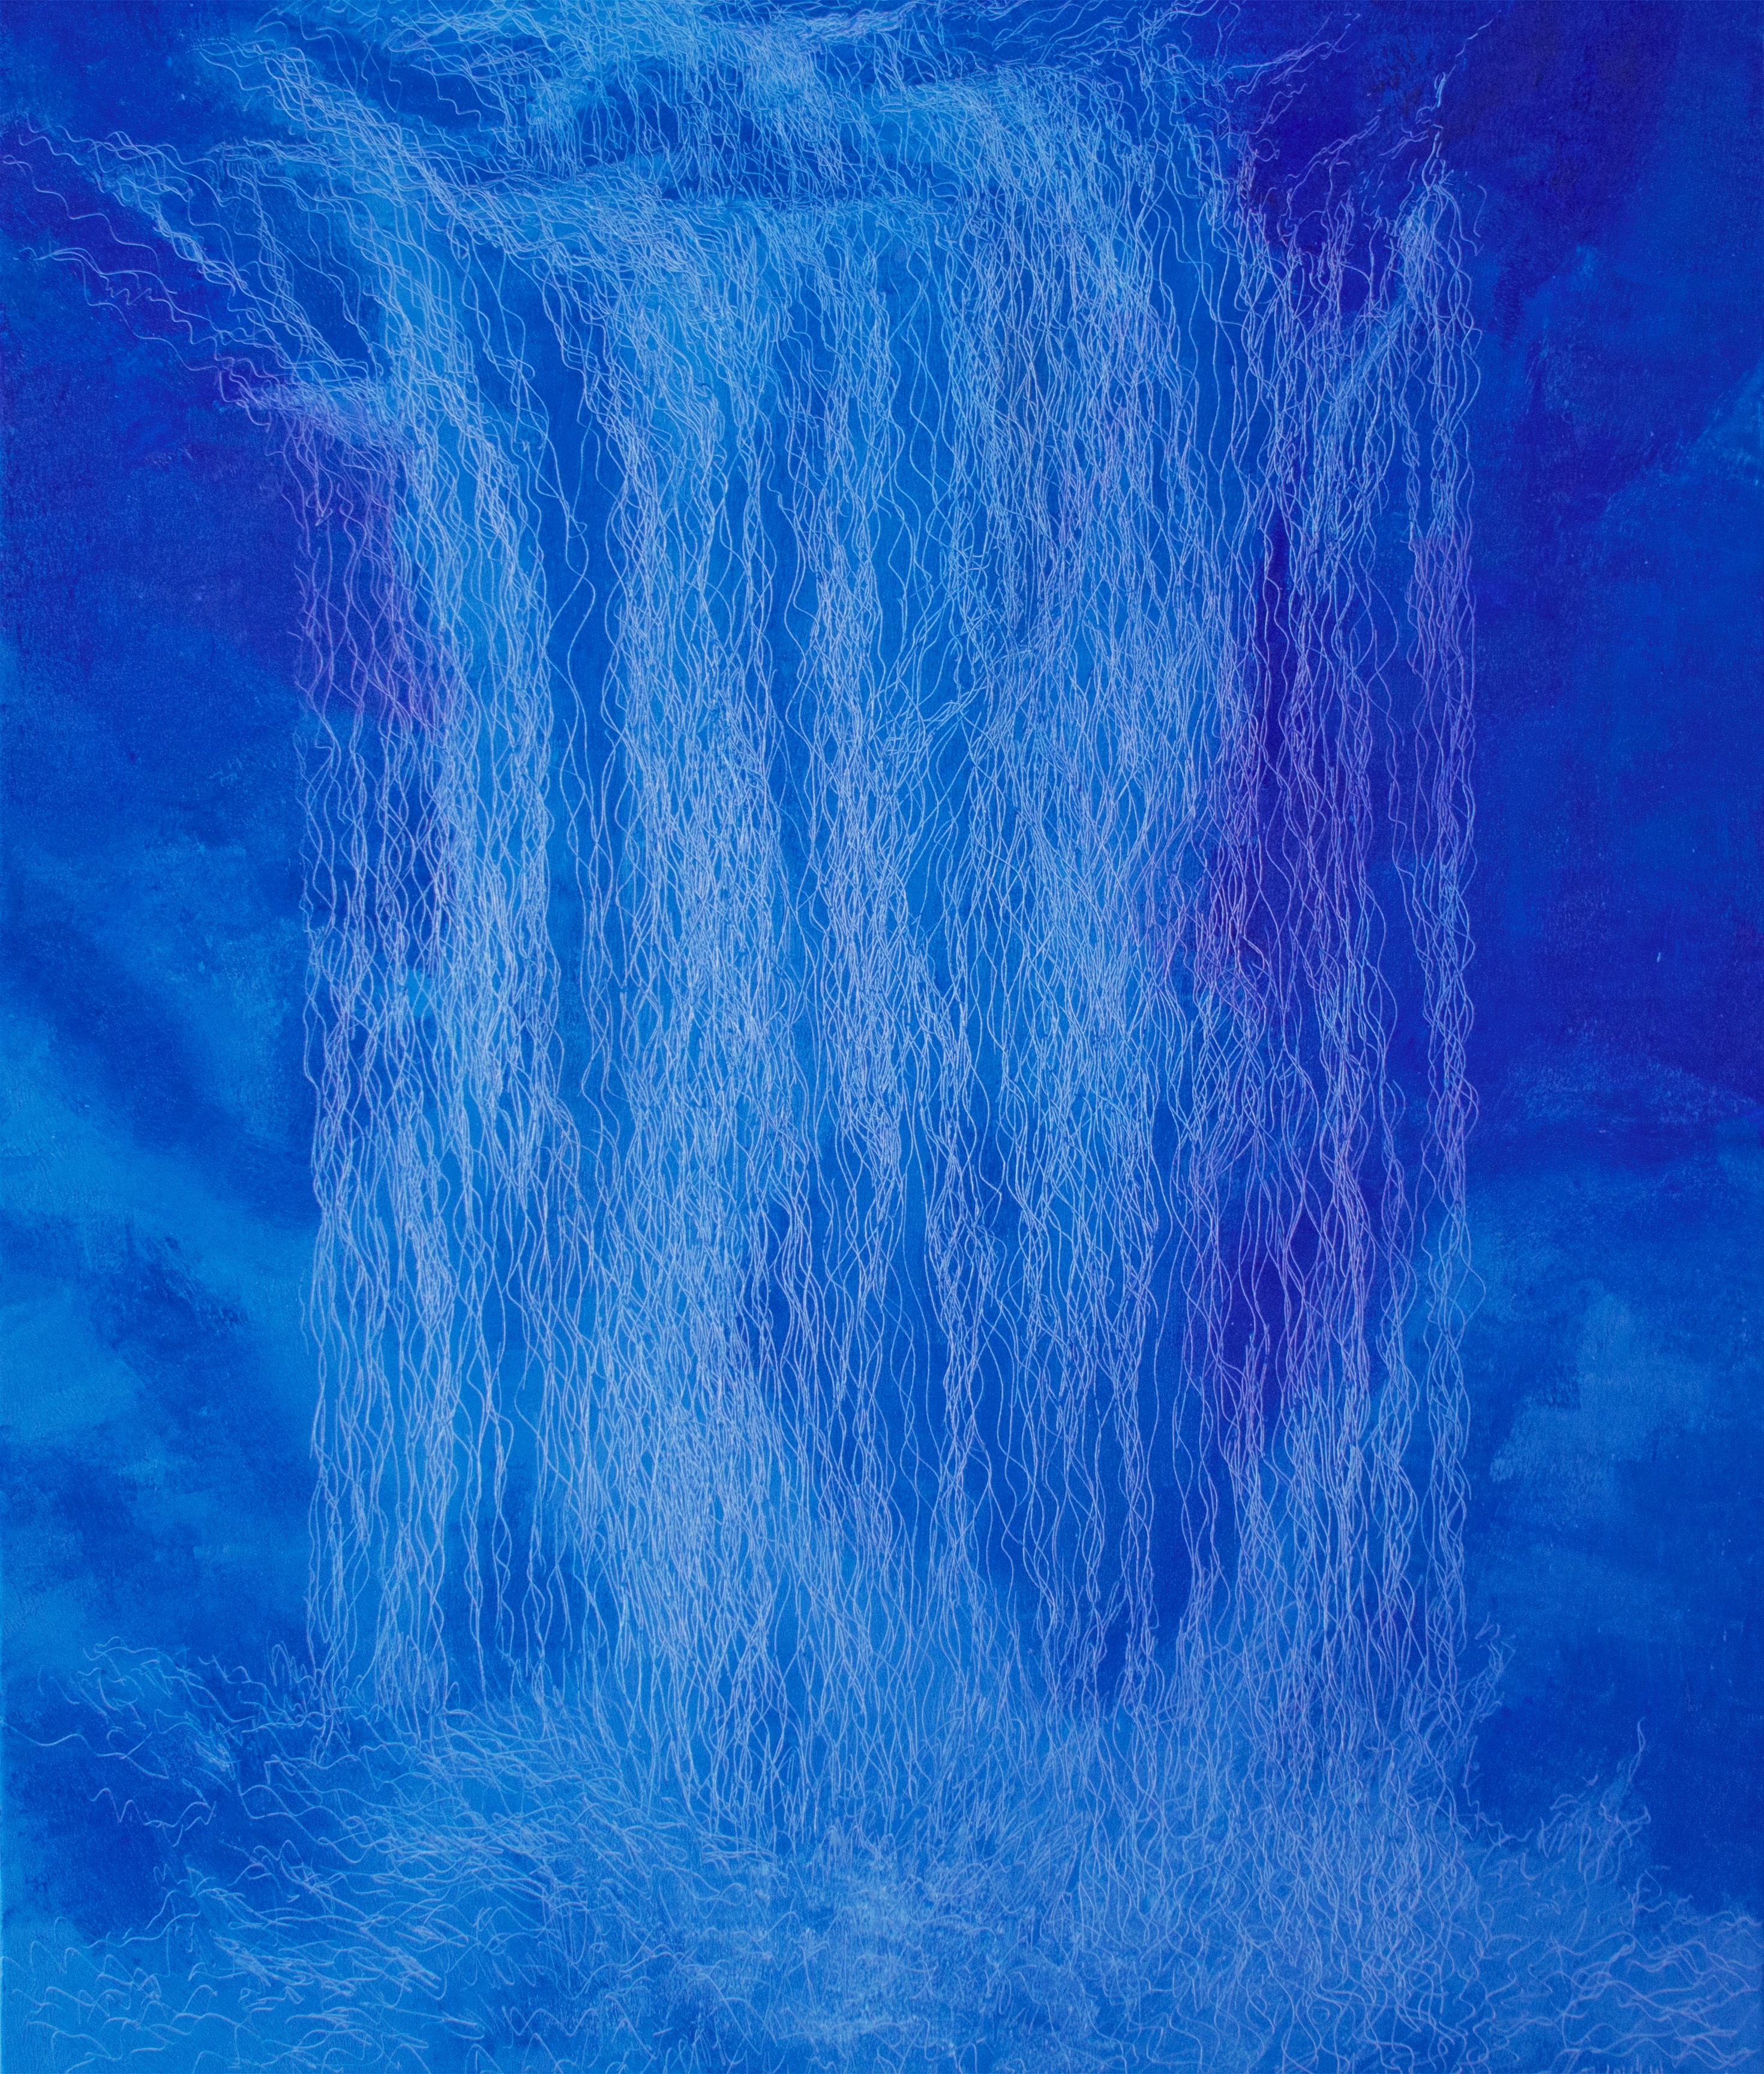 Wasserfall VI